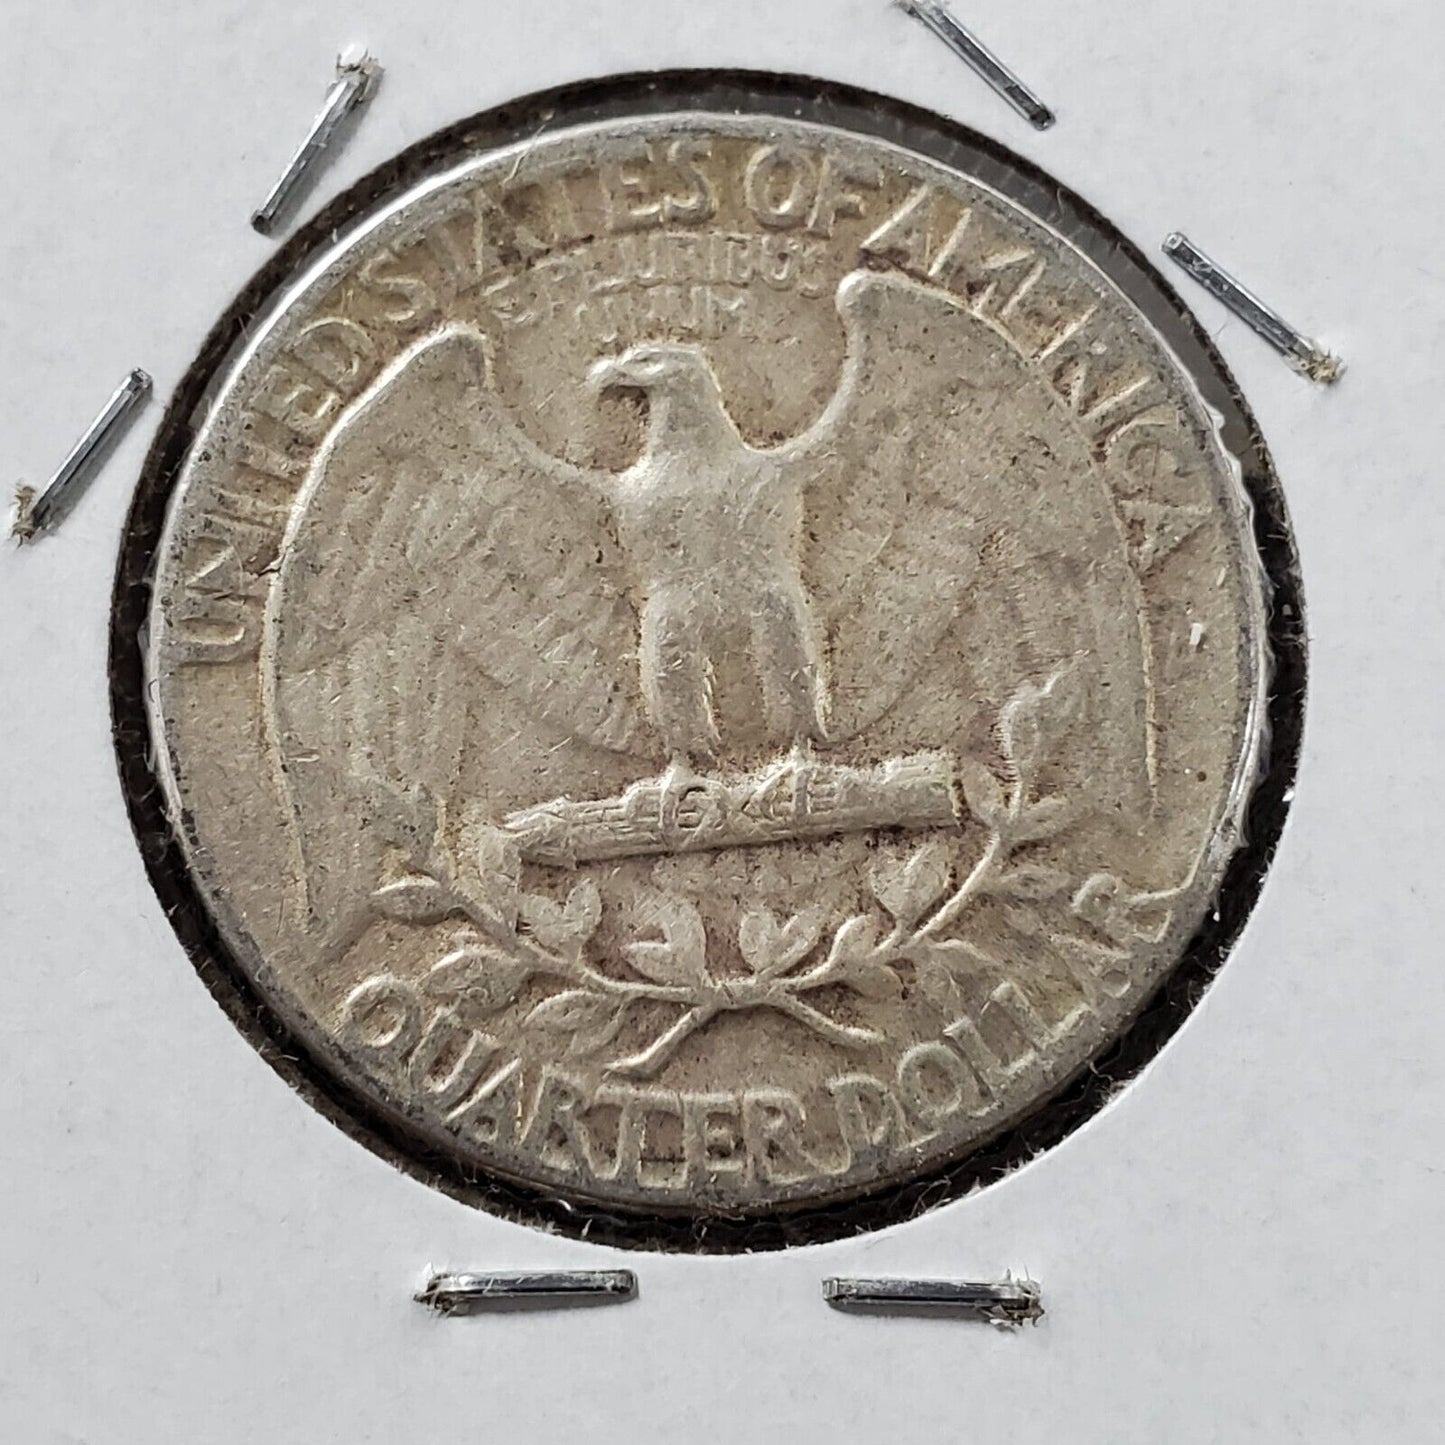 1956 P 25c Washington Quarter Coin Die Chip OBV Variety